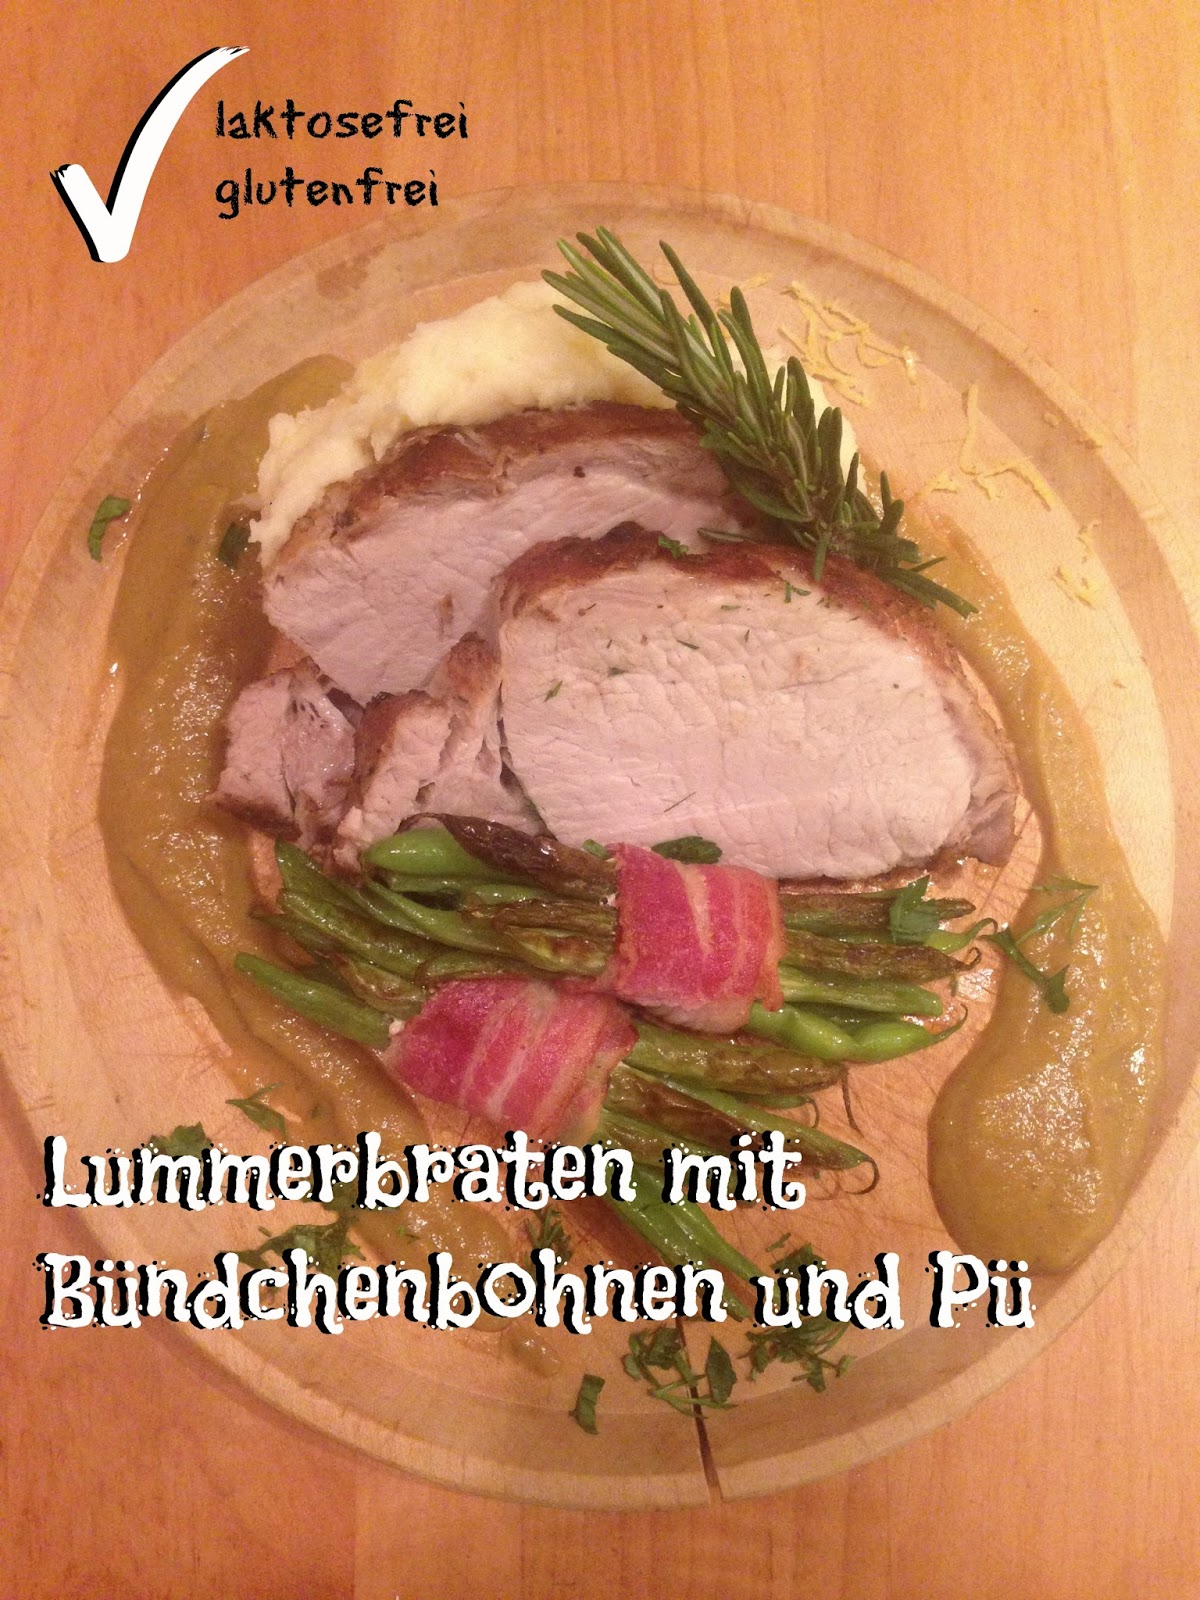 Lou celebrates food!: Lummerbraten mit Bohnenbündchen und Pü